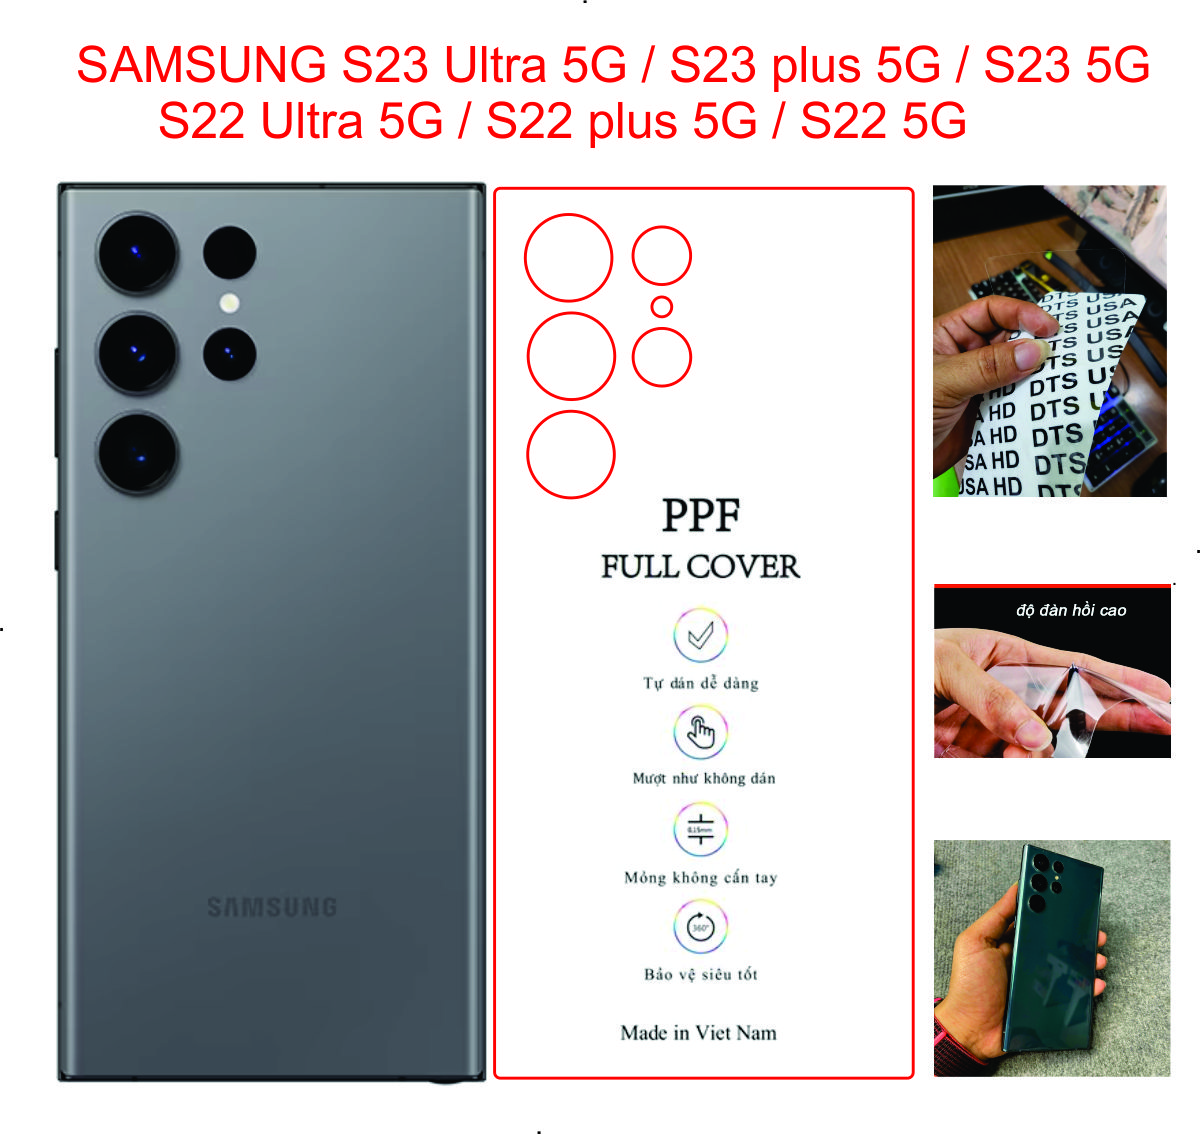 Miếng Dán dẻo PPF mặt lưng trong suốt dành cho SAMSUNG S23 Ultra 5G / S23 plus 5G / S23 5G / S22